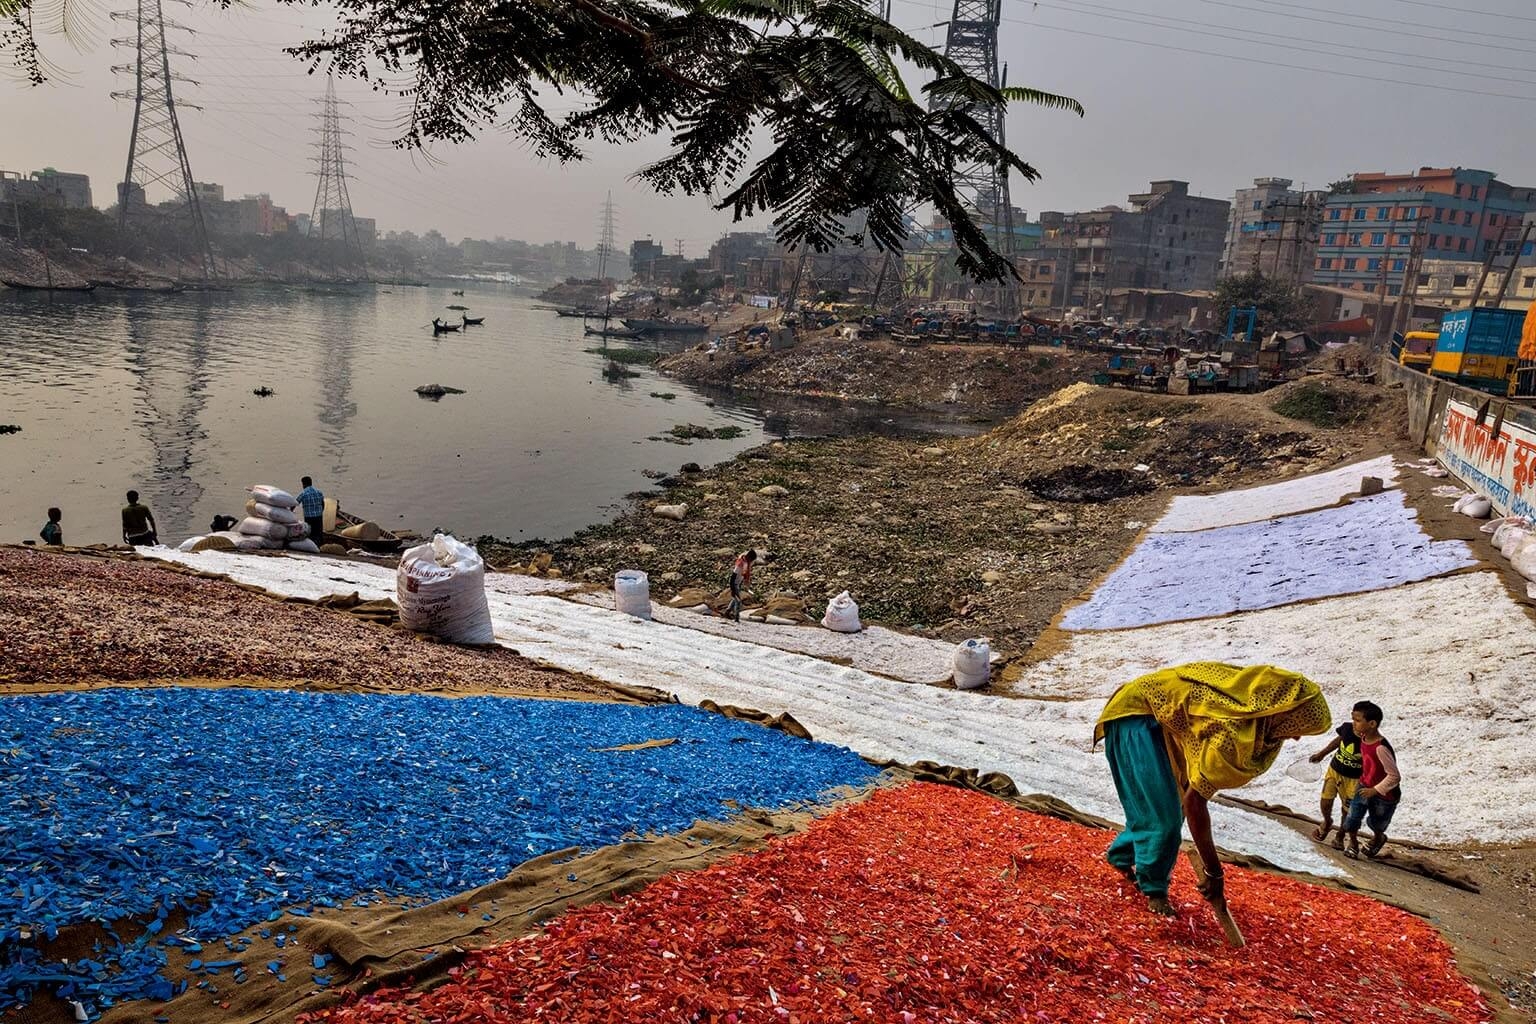 彩色塑膠碎片經過人工收集、清洗和分類後，堆放在河岸上曝曬。達卡市和周遭地區約有12萬人從事這種非正式資源回收業。攝影：藍迪．奧森 RANDY OLSON